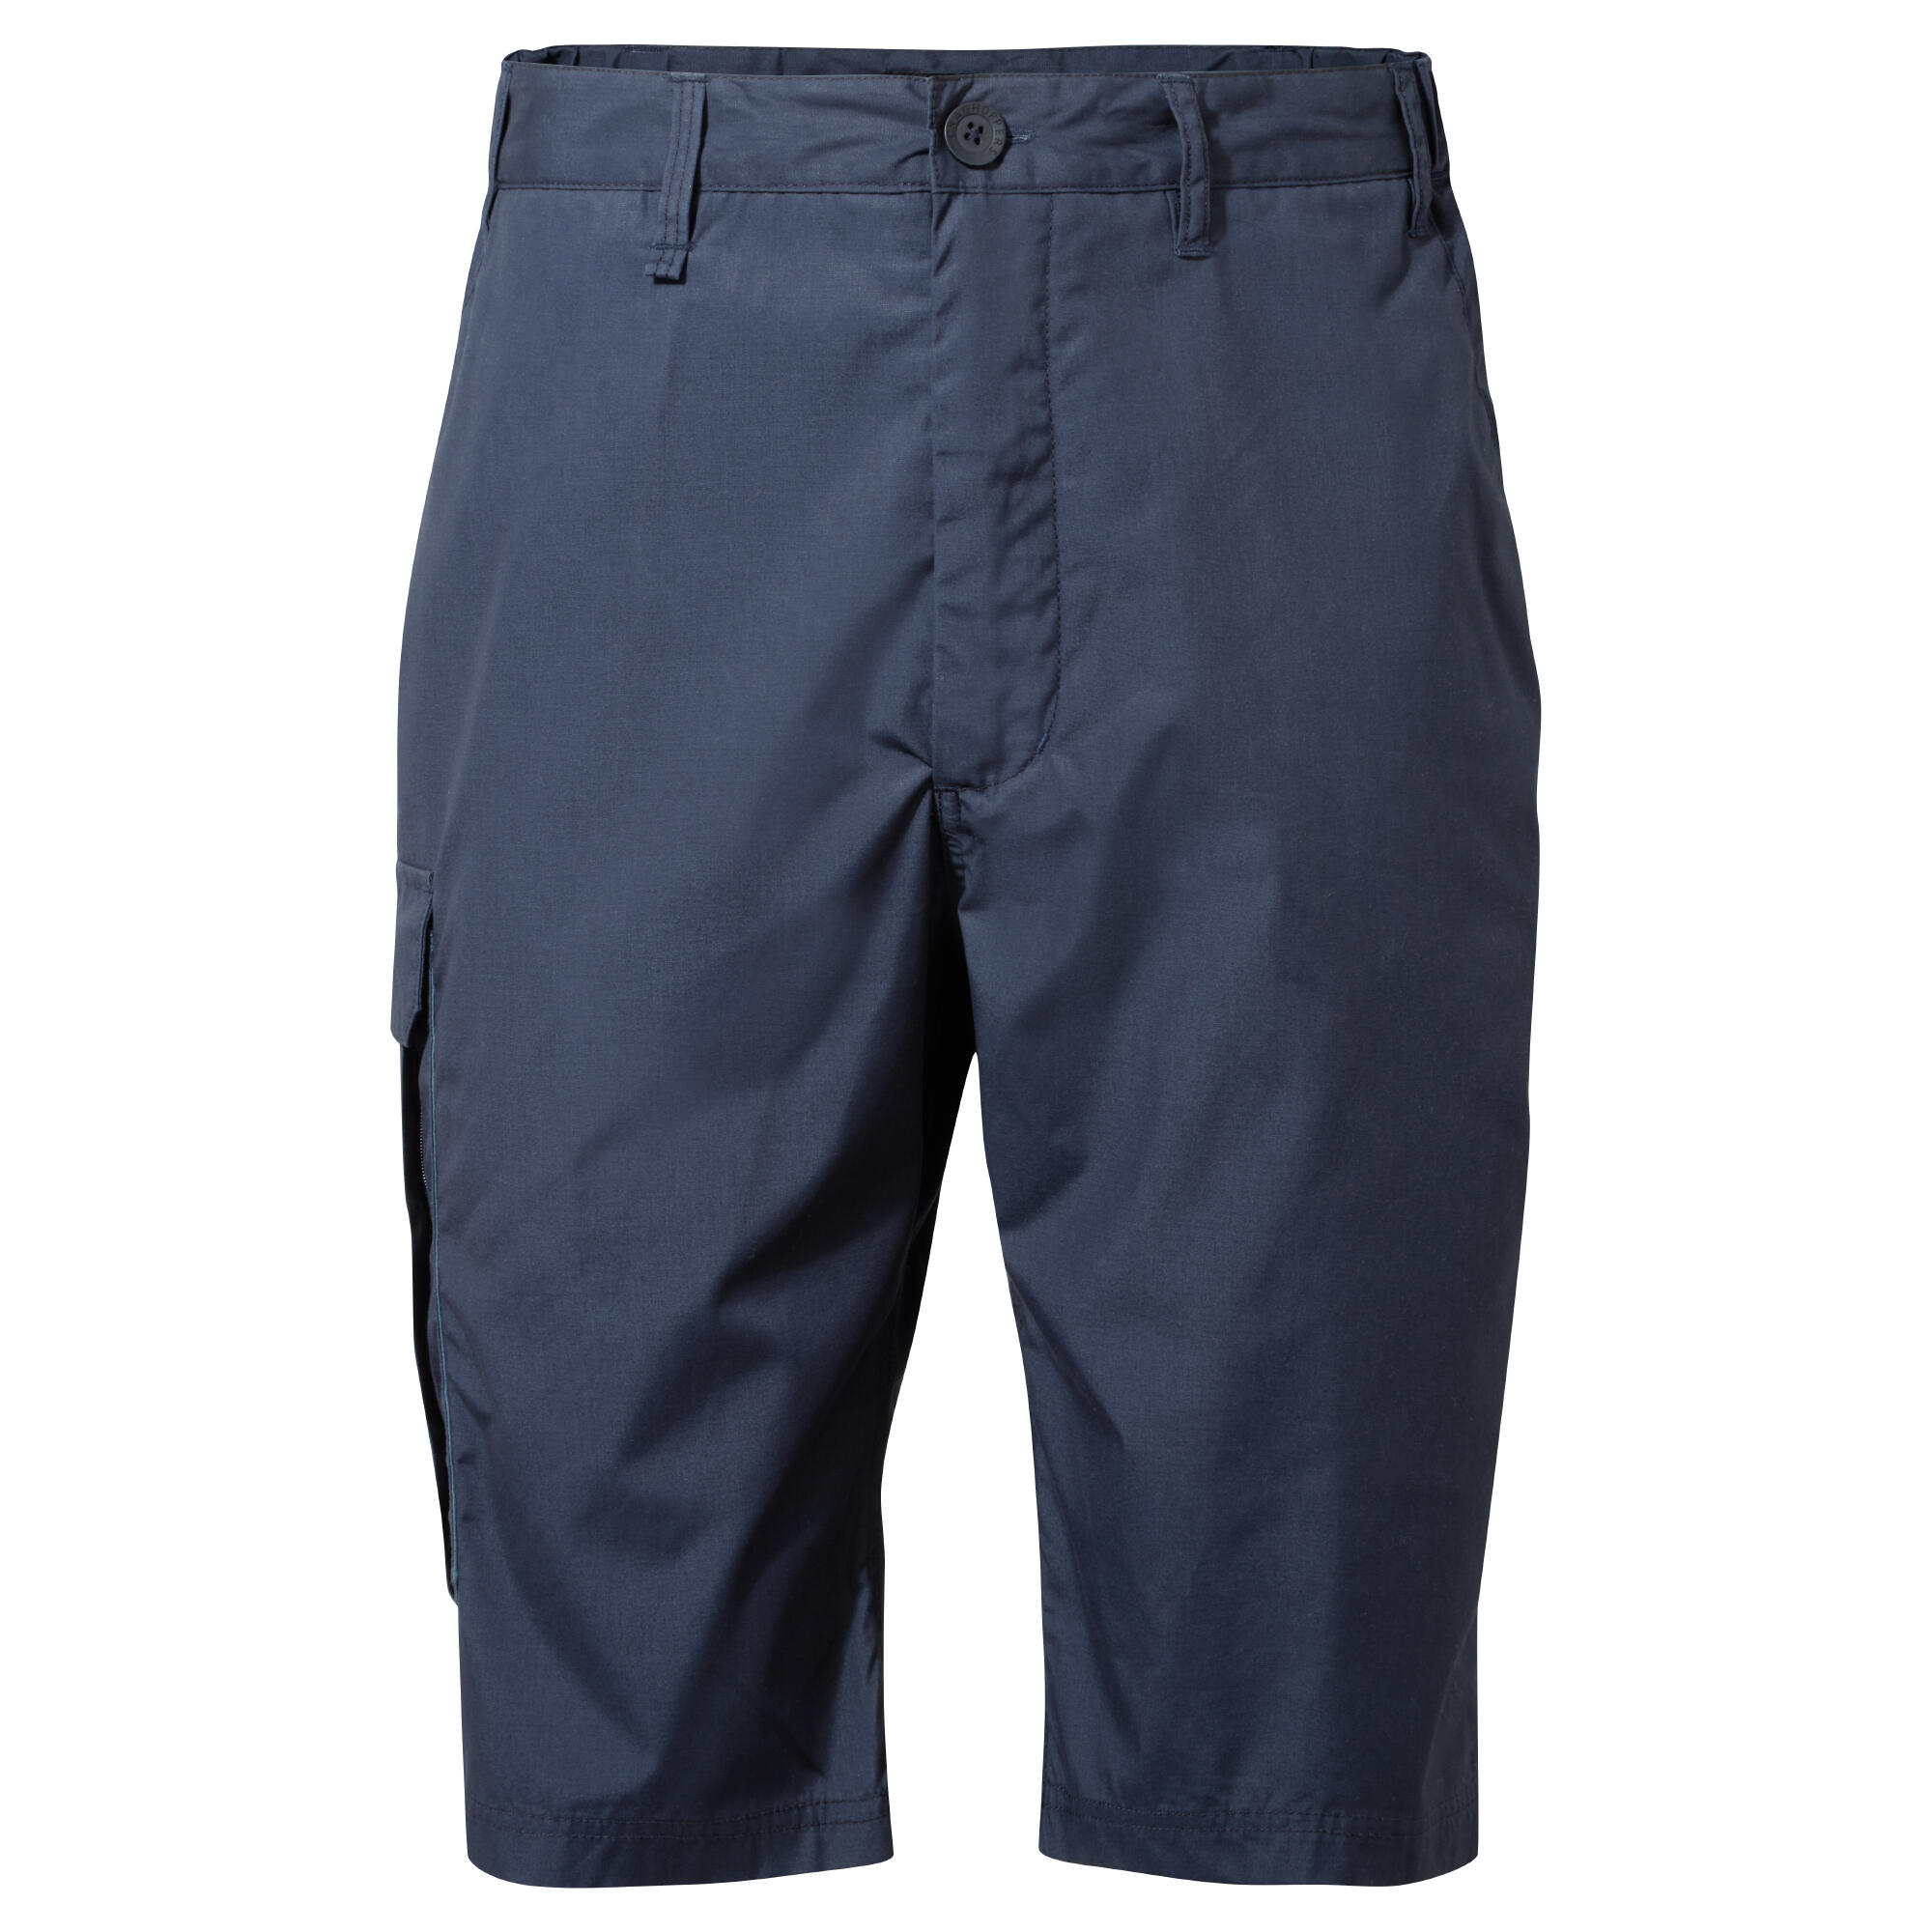 Men's Kiwi Long Shorts 5/5